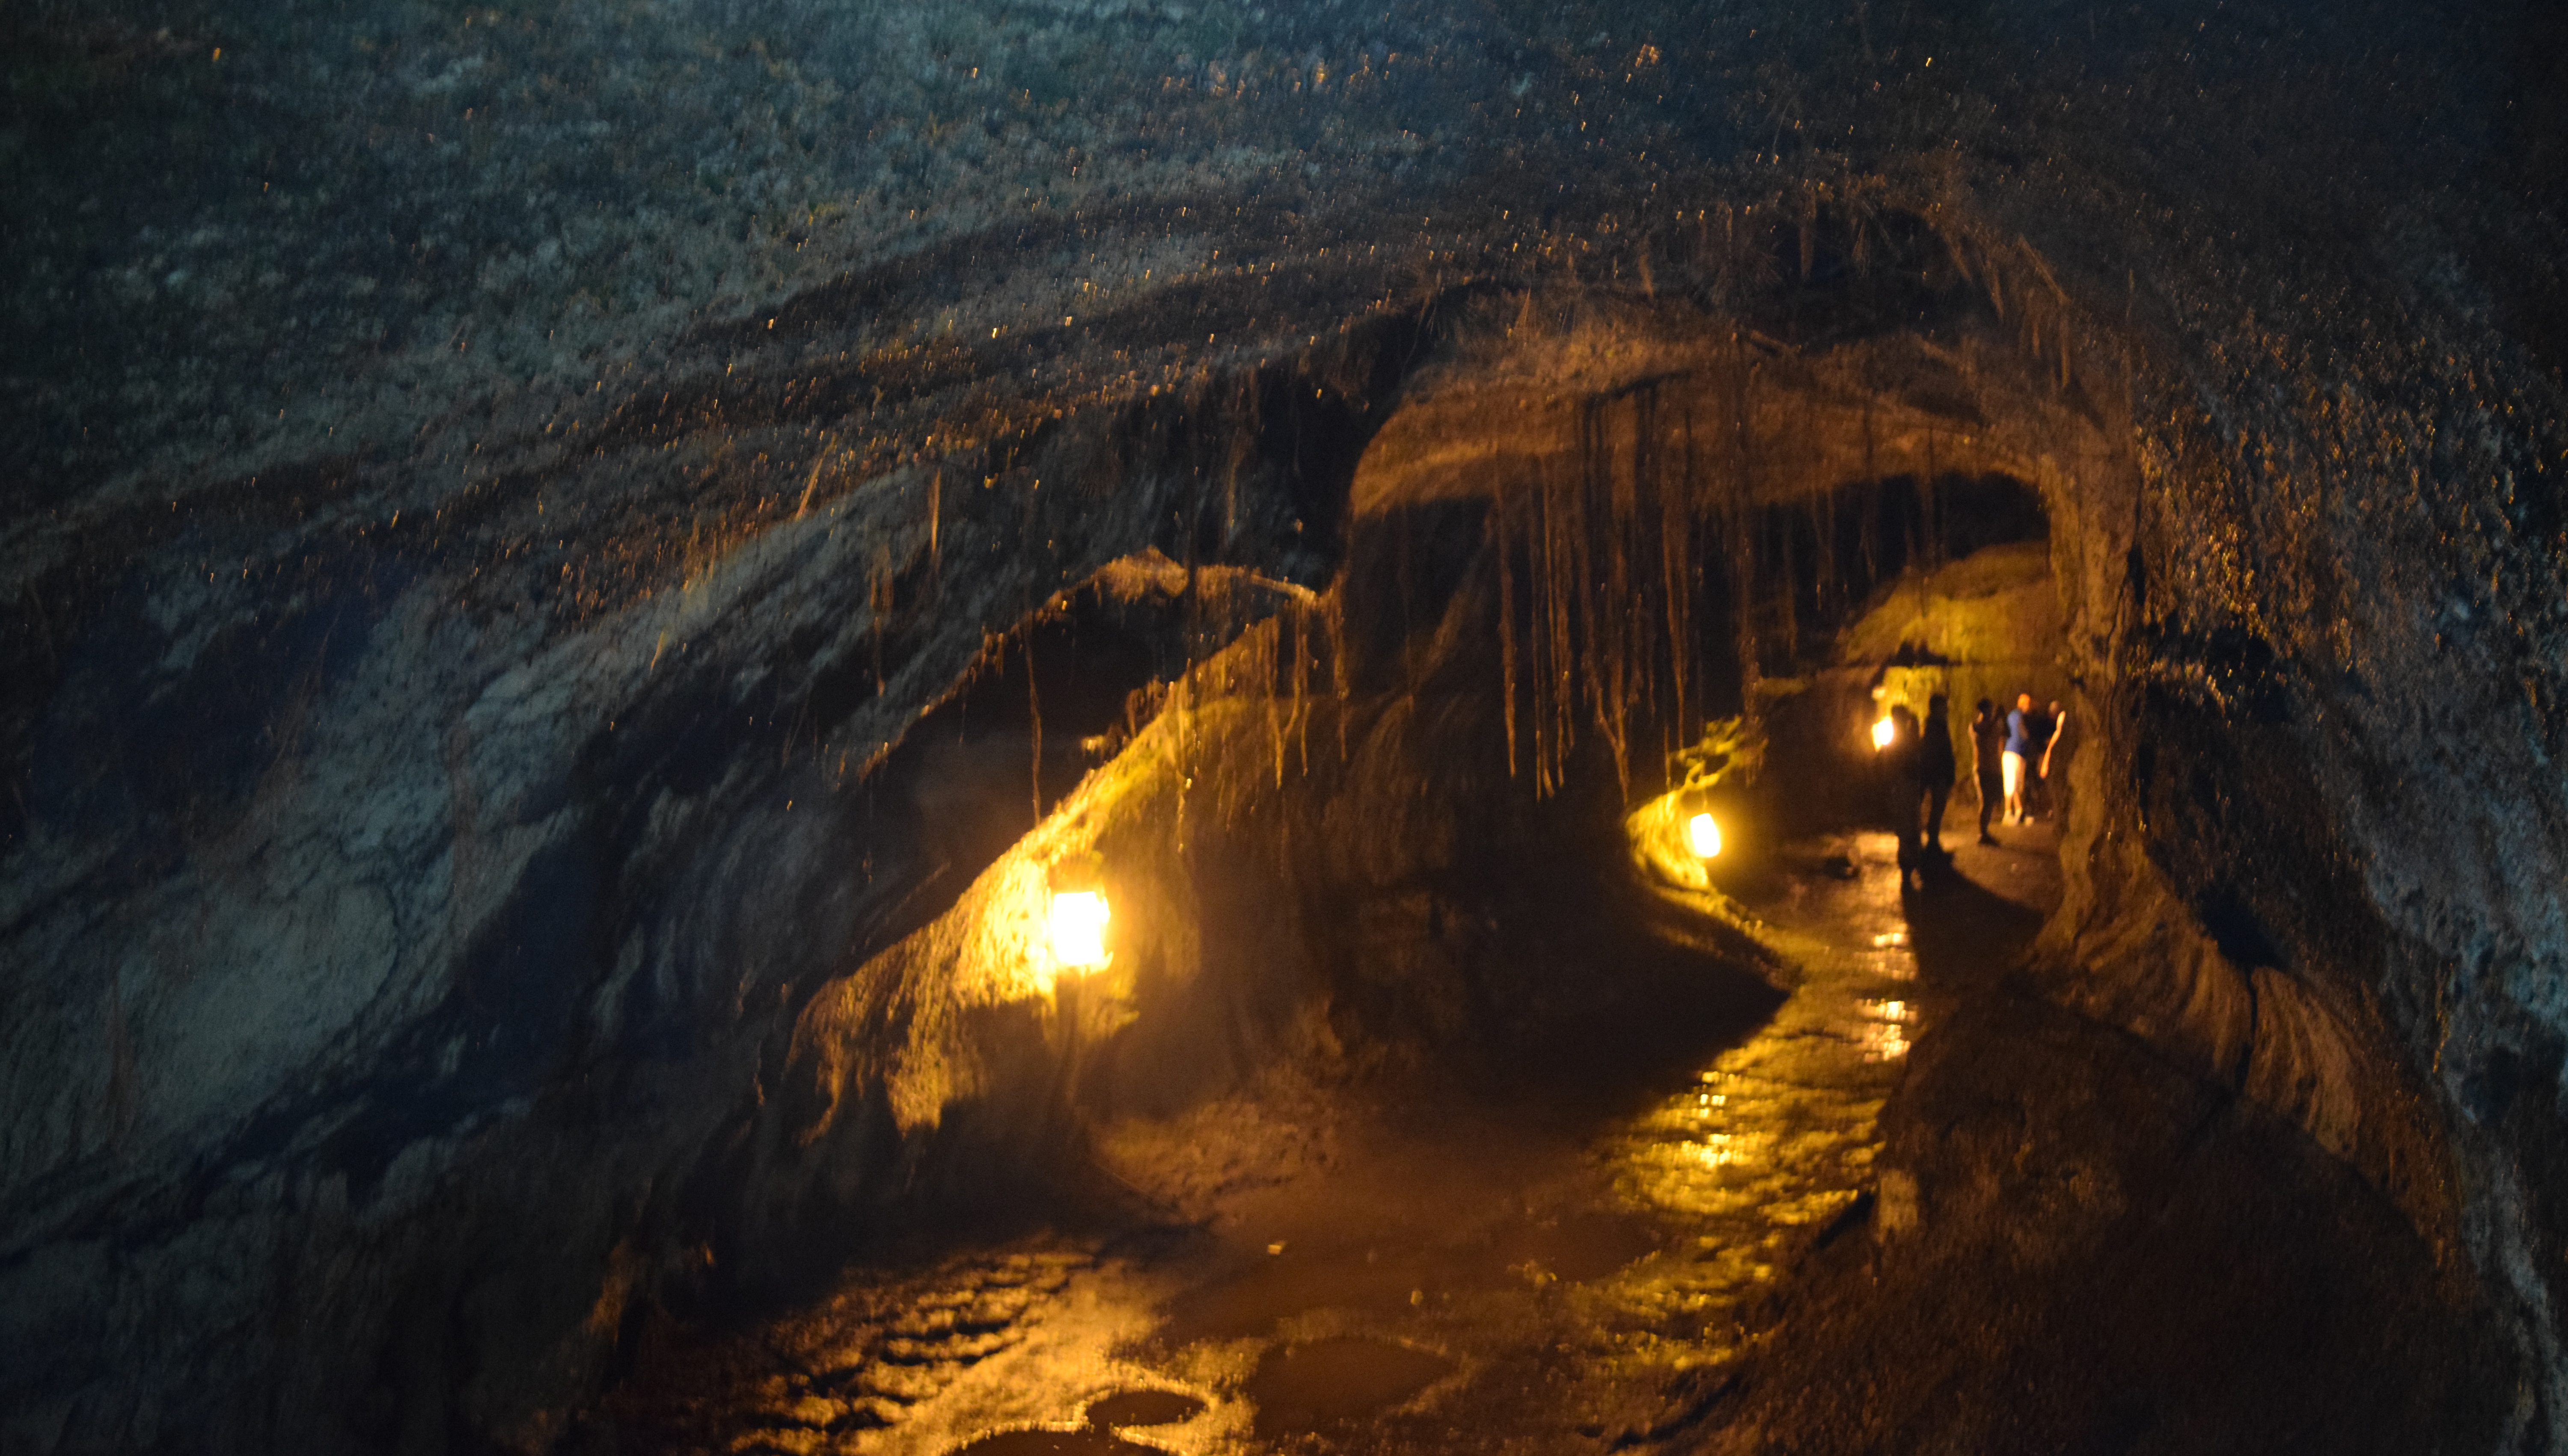 Inside The Thurston Lava Tube